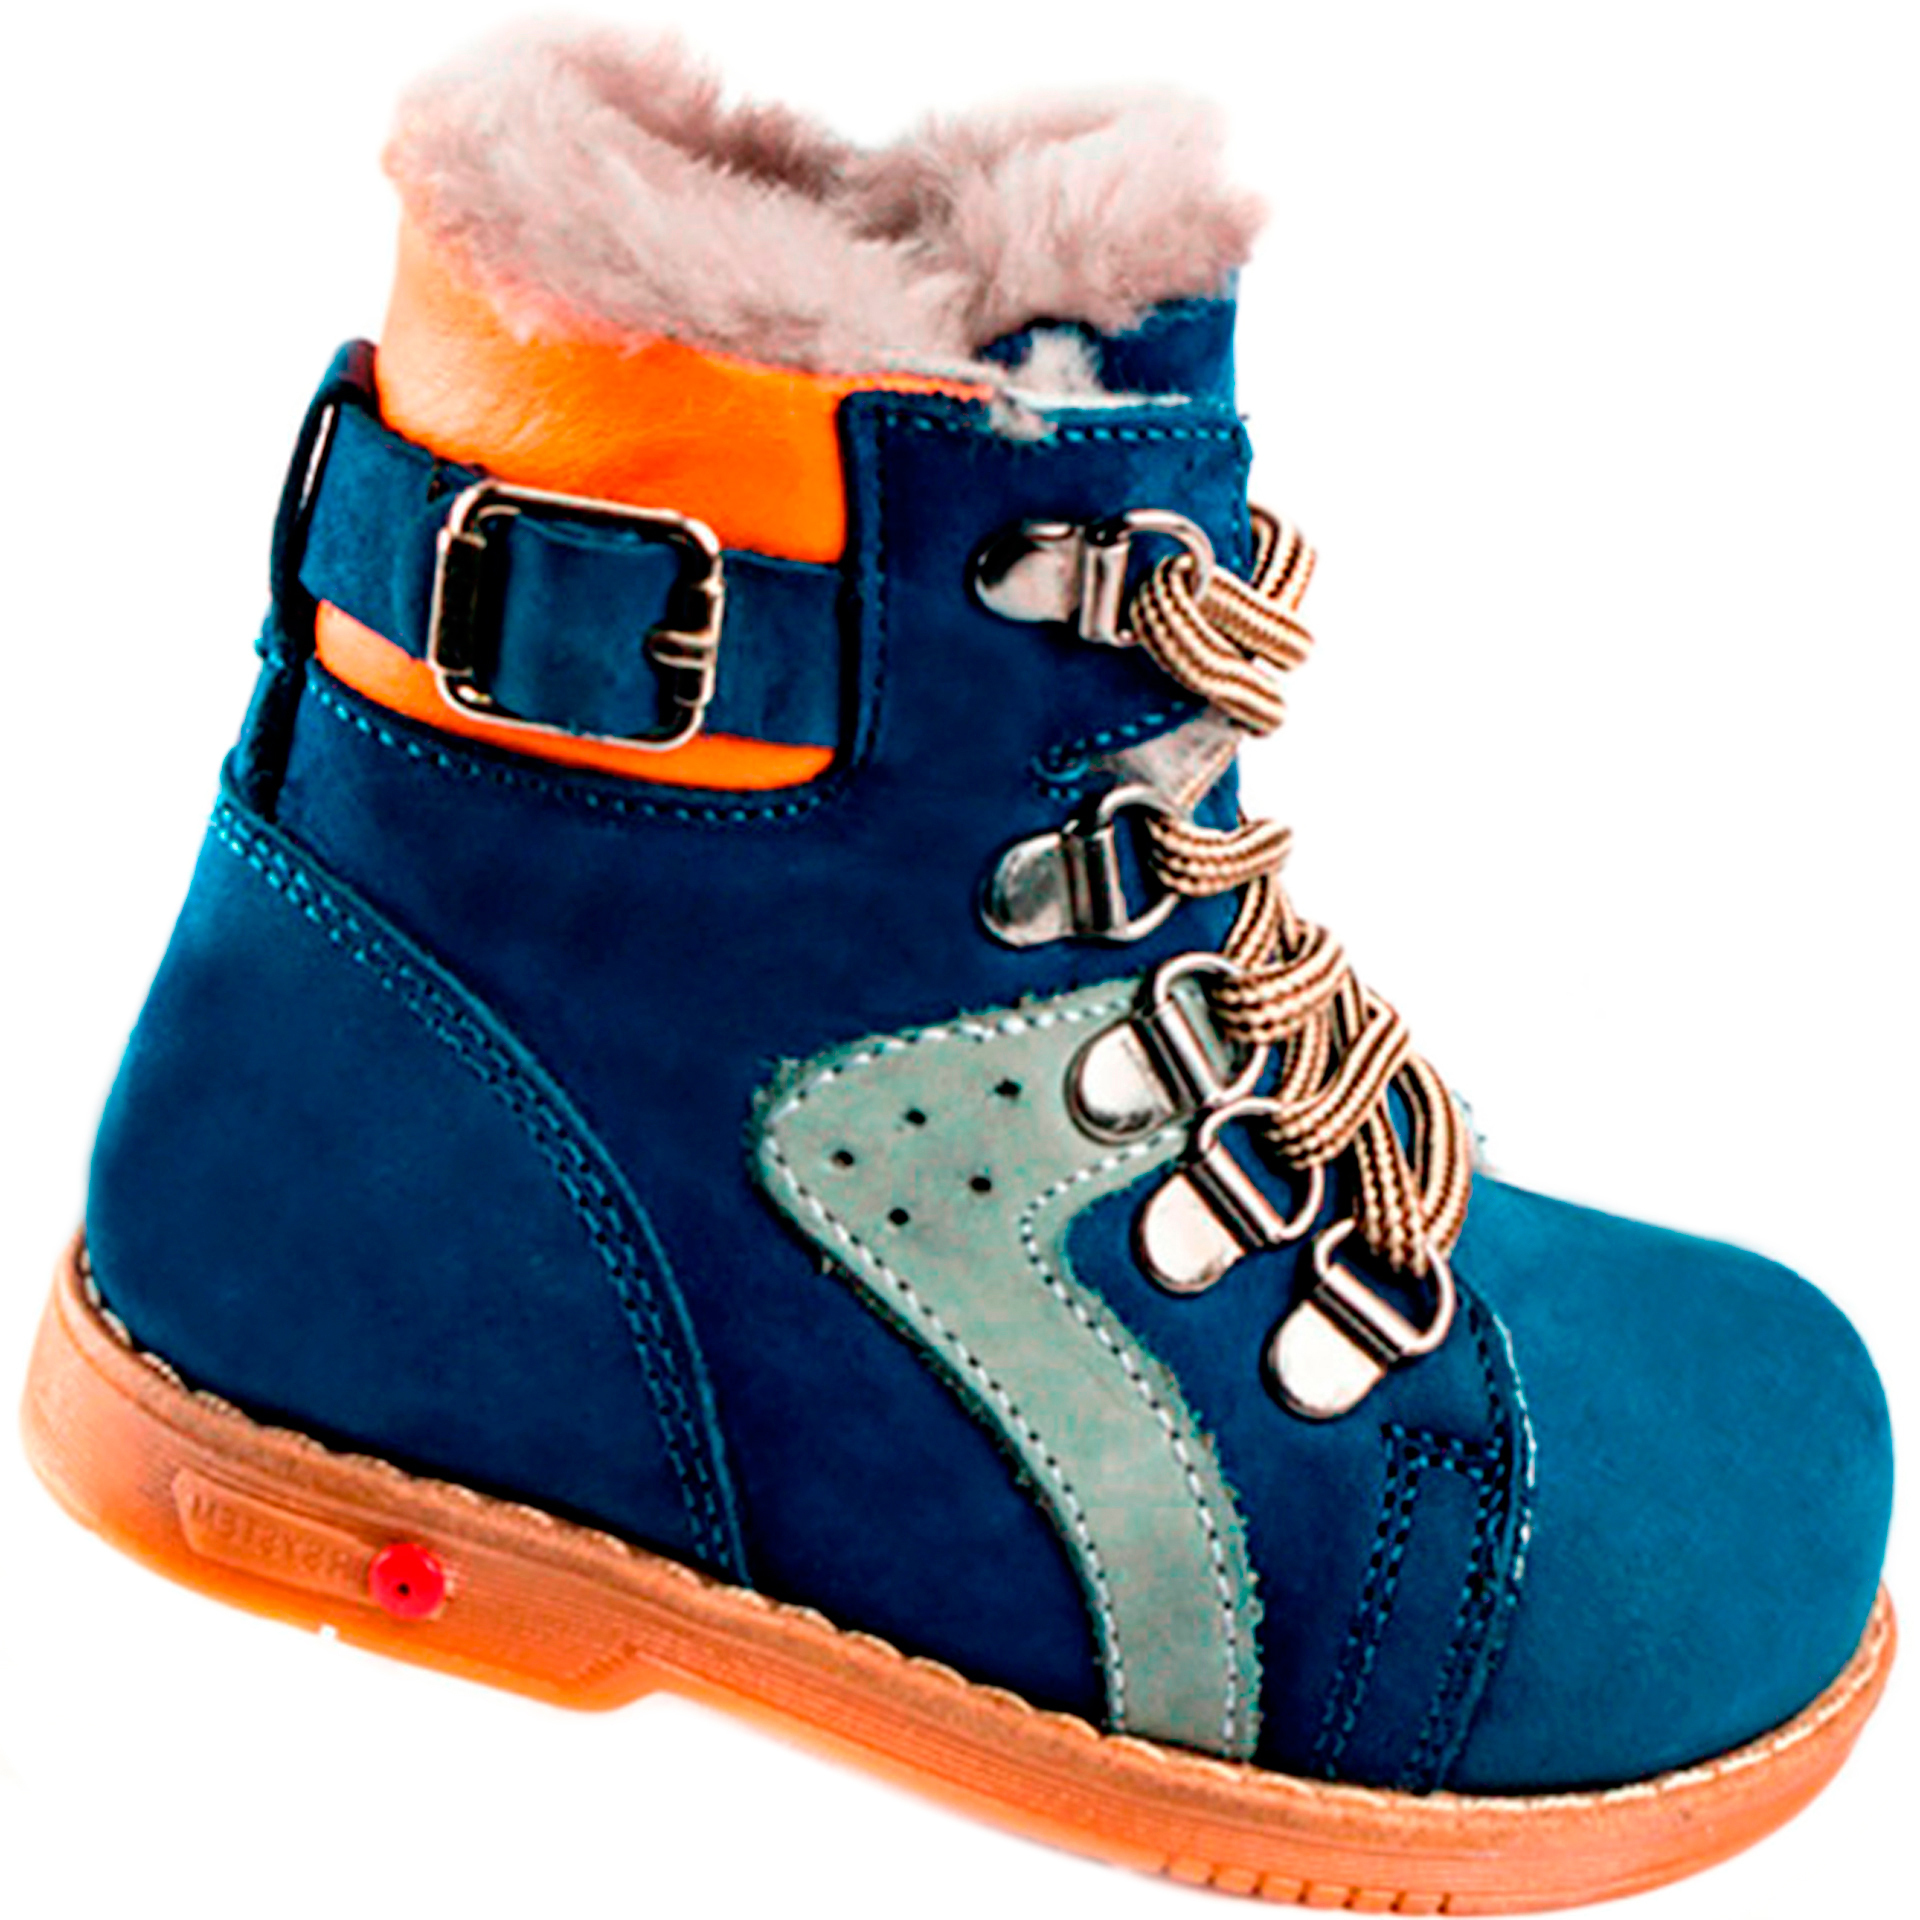 Зимние ботинки детские (1267) материал Нубук, цвет Синий  для мальчиков 26-30 размеры – Sole Kids